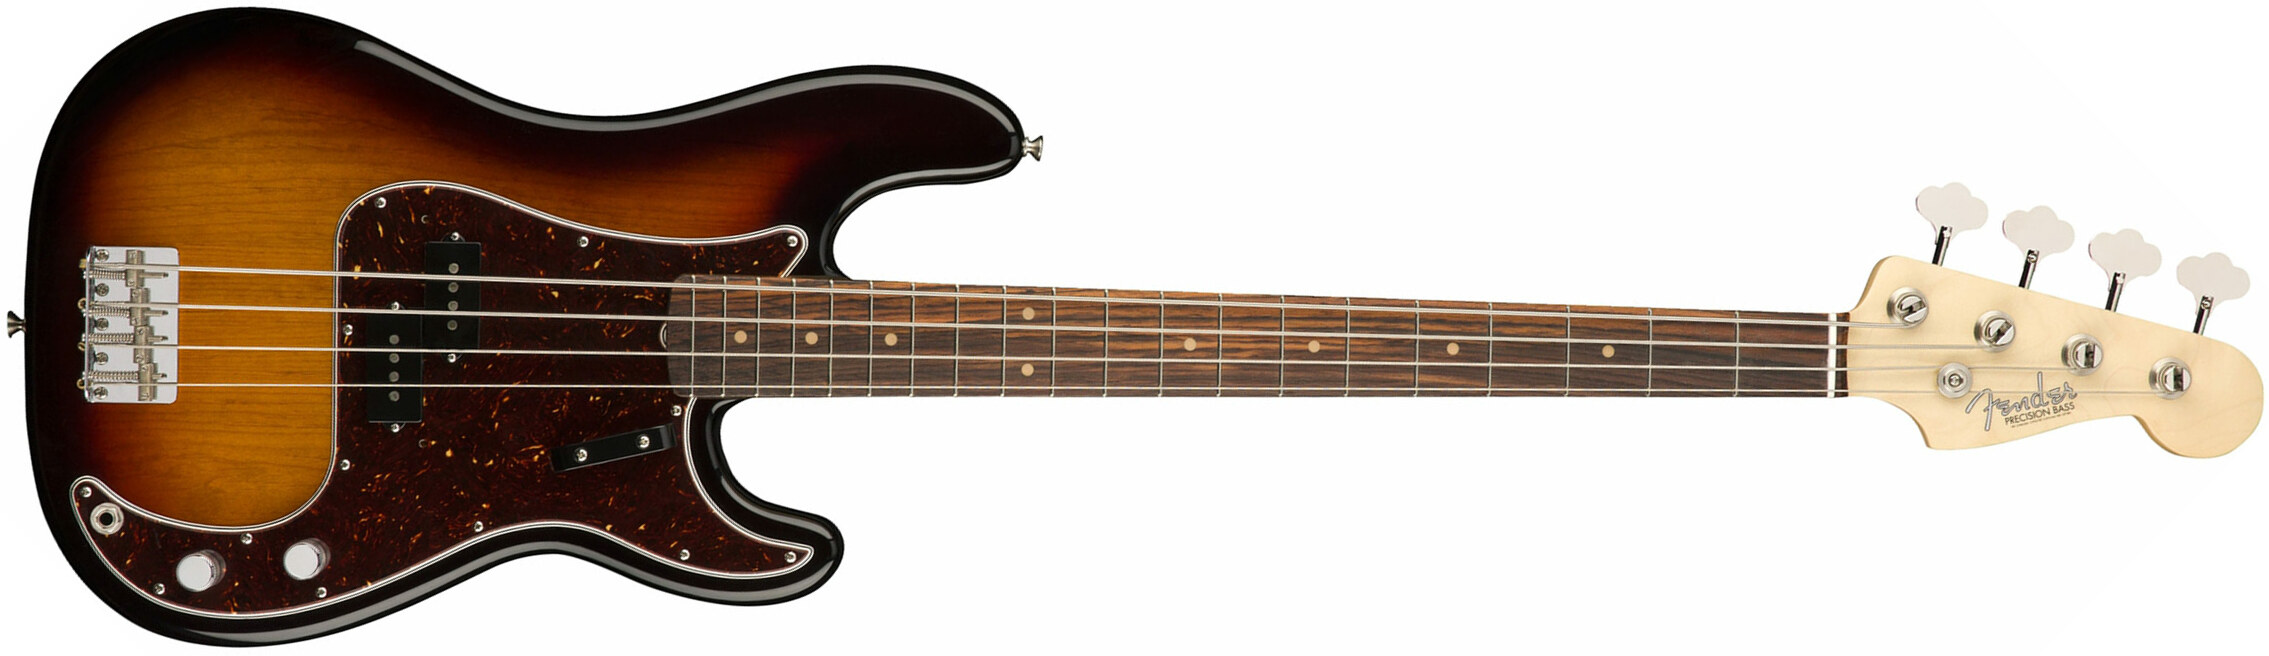 Fender Precision Bass '60s American Original Usa Rw - 3-color Sunburst - Bajo eléctrico de cuerpo sólido - Main picture